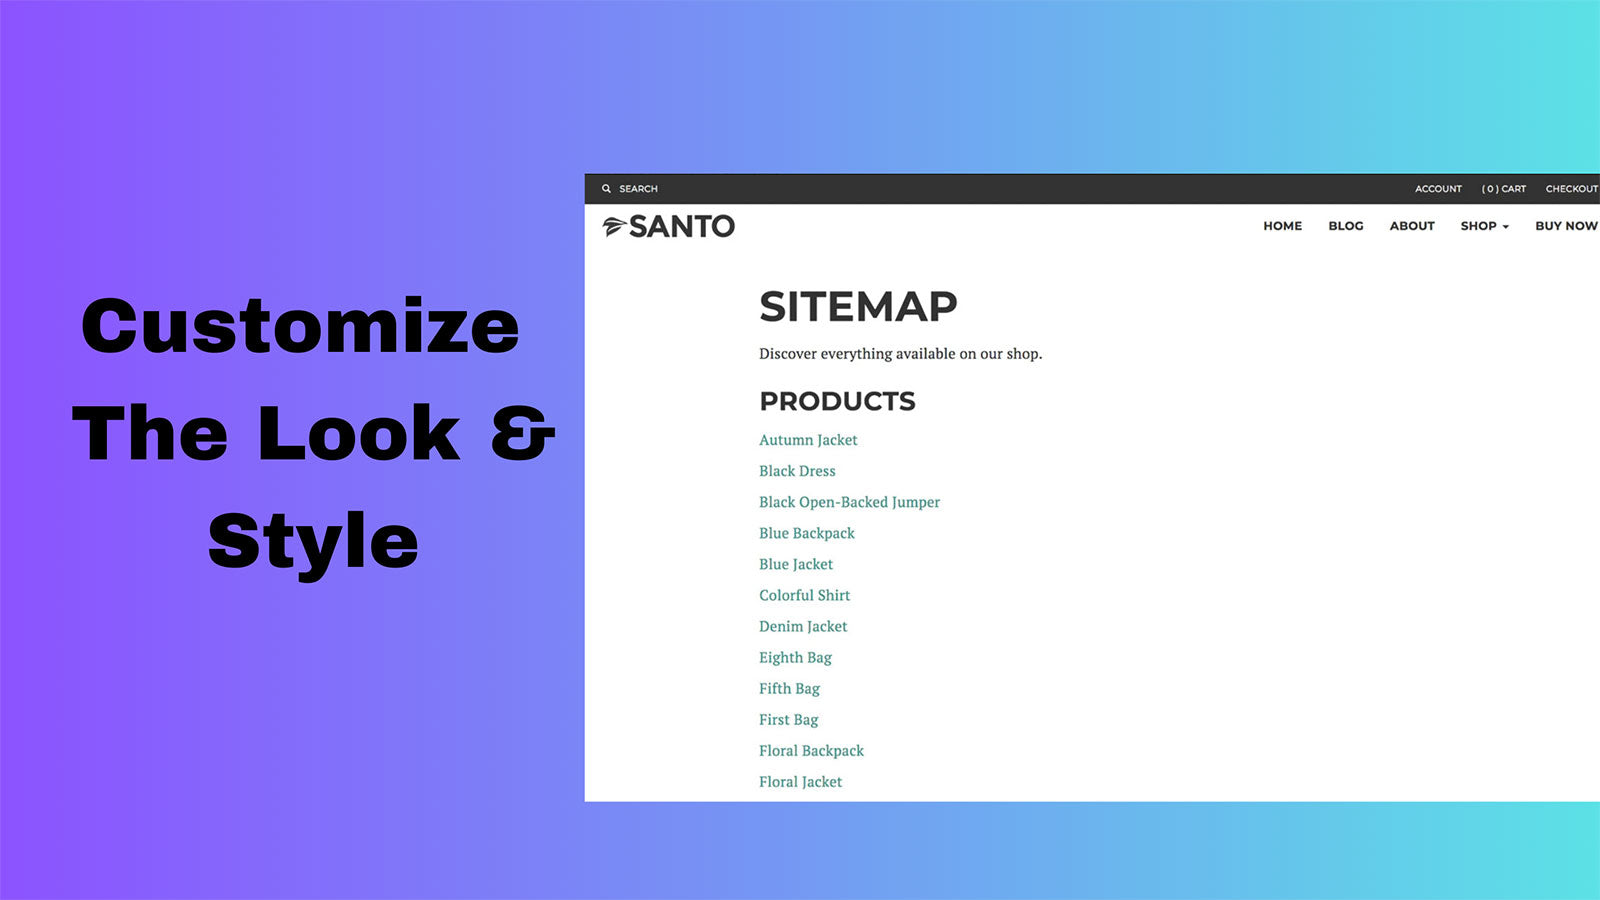 SEO Sitemap Builder Screenshot